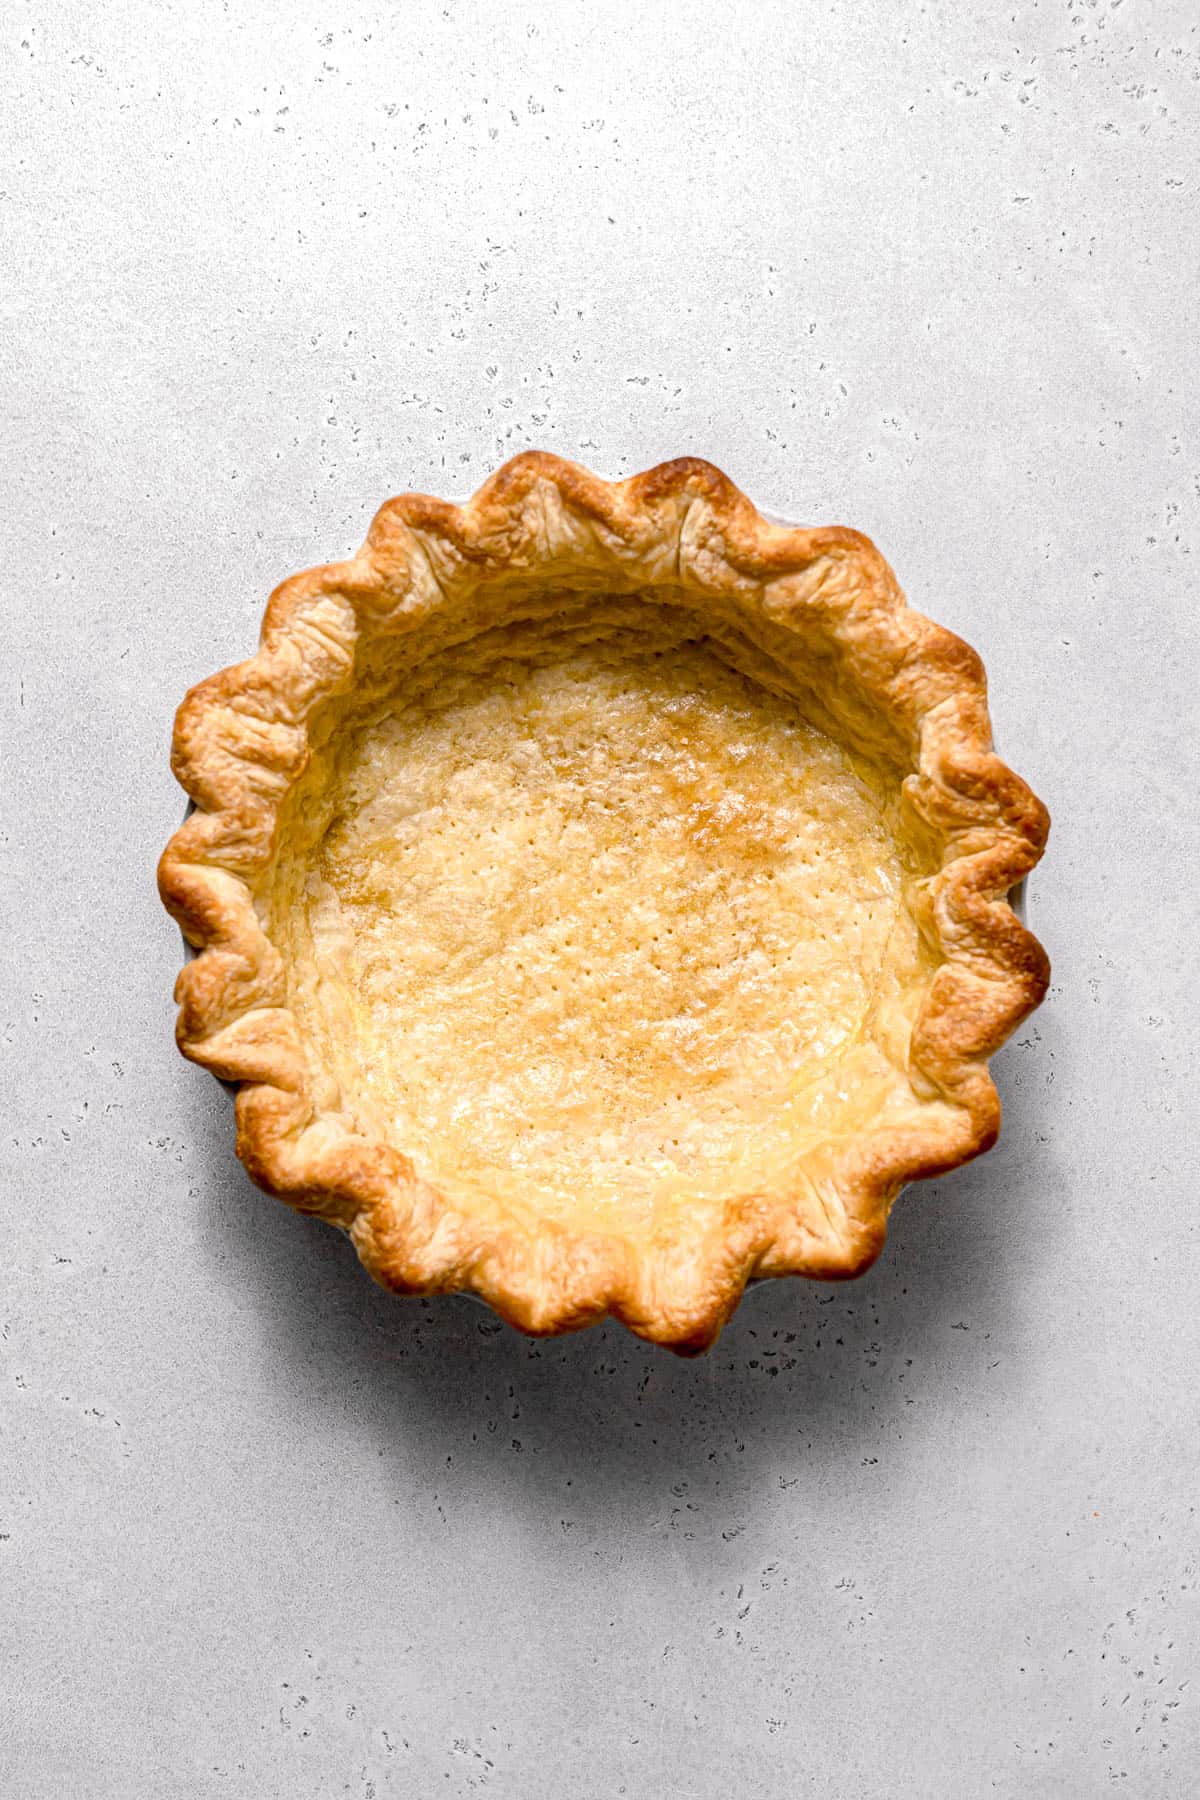 par baked pie crust.